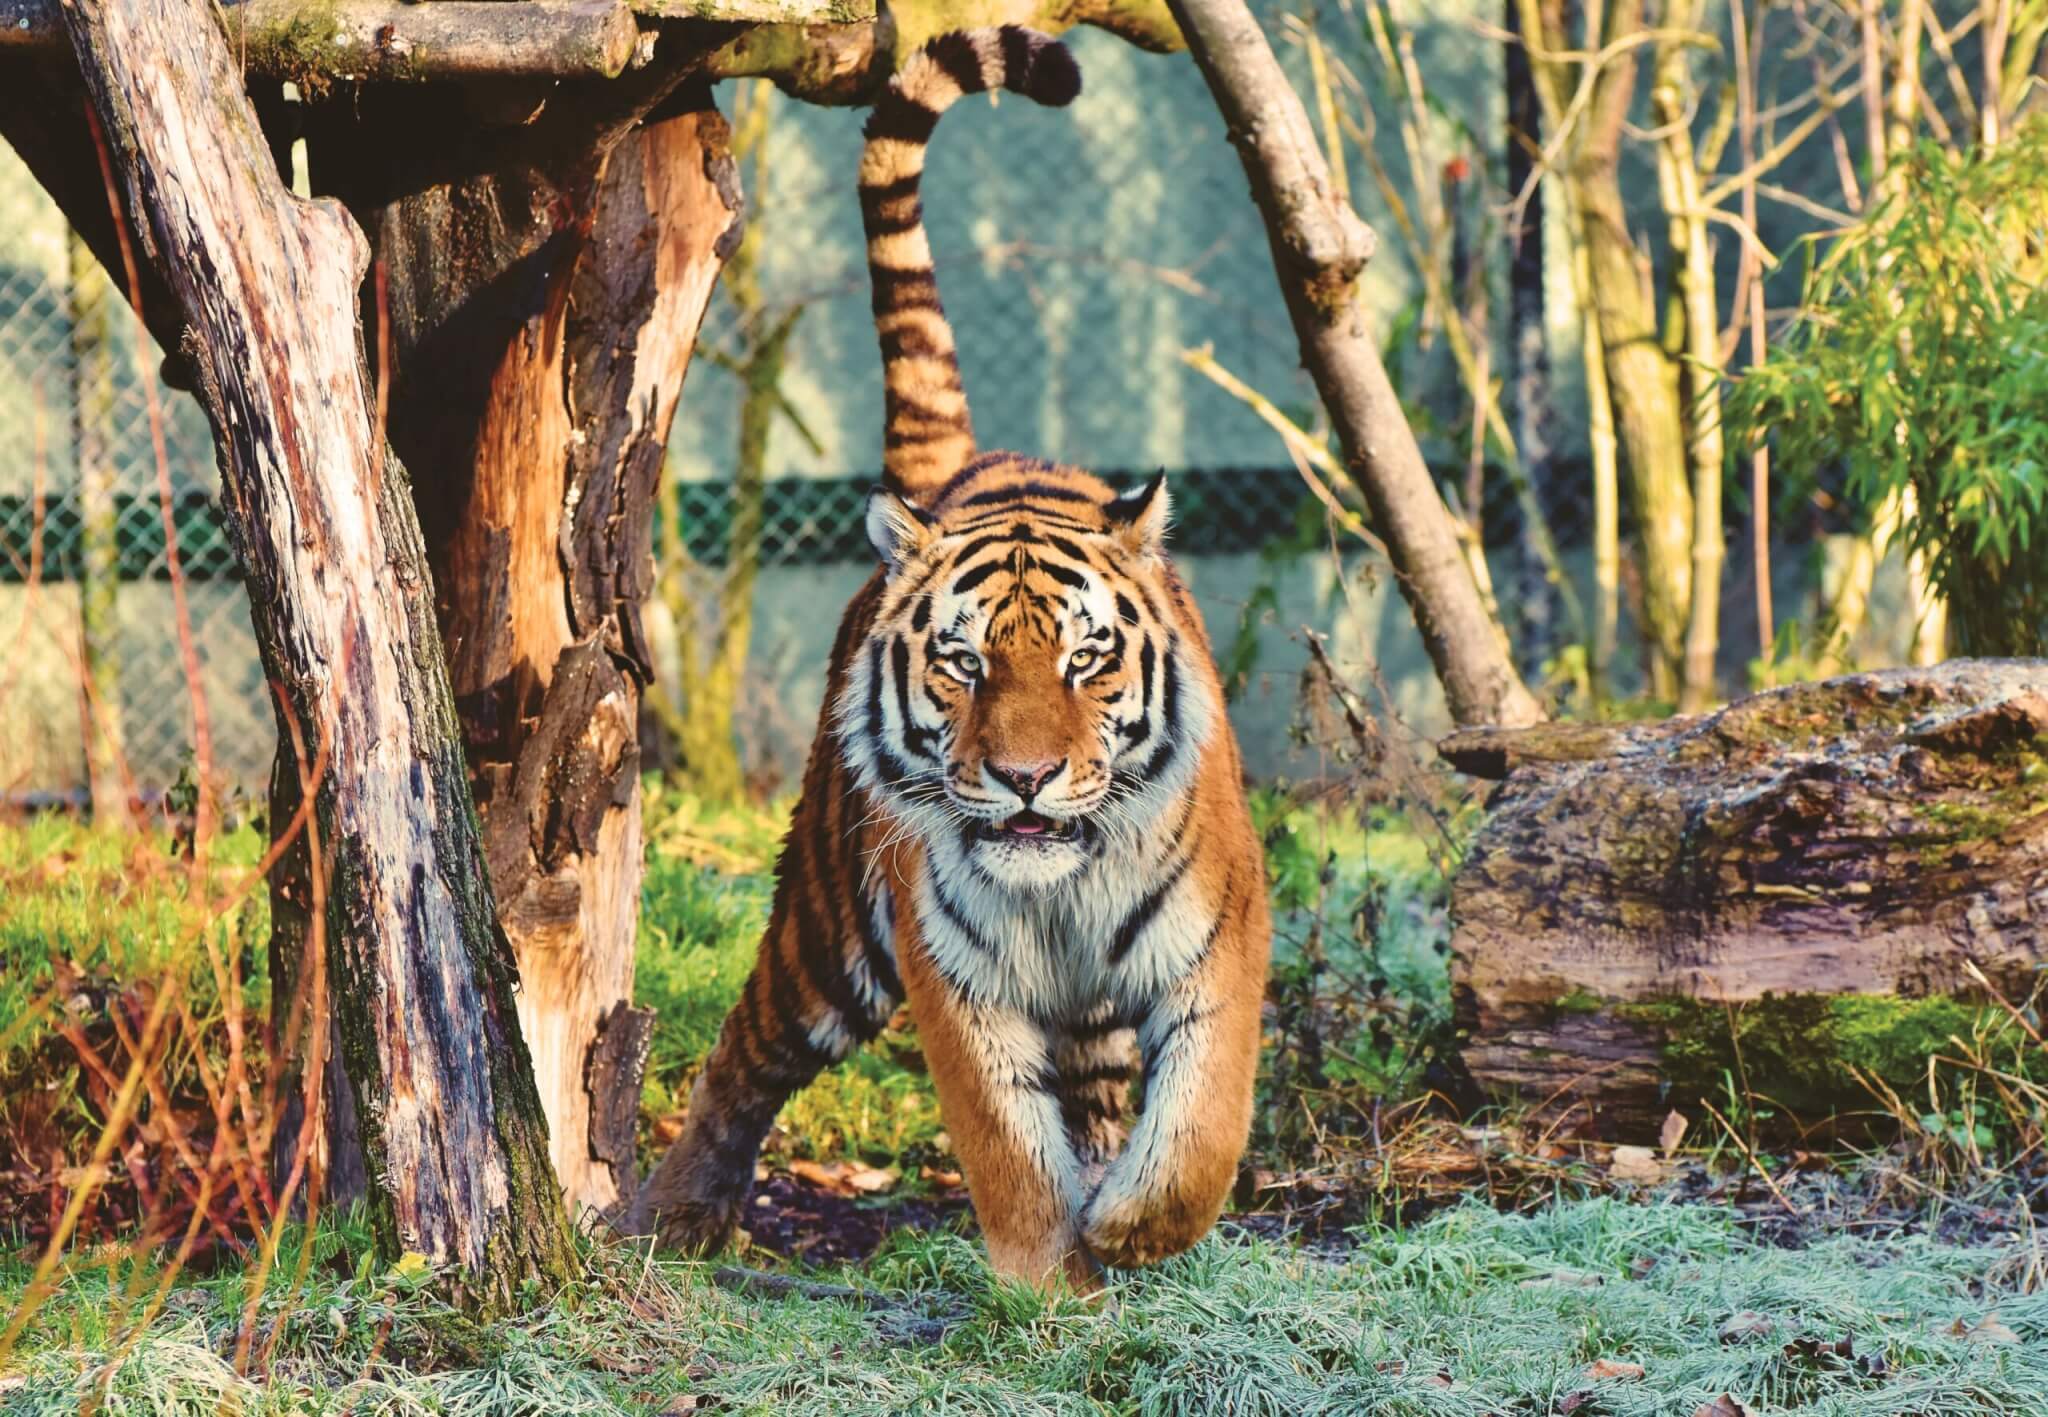 Tigre de Bengala Escapa y Aterroriza a Vecindario, los Animales Silvestres no son ‘Mascotas’